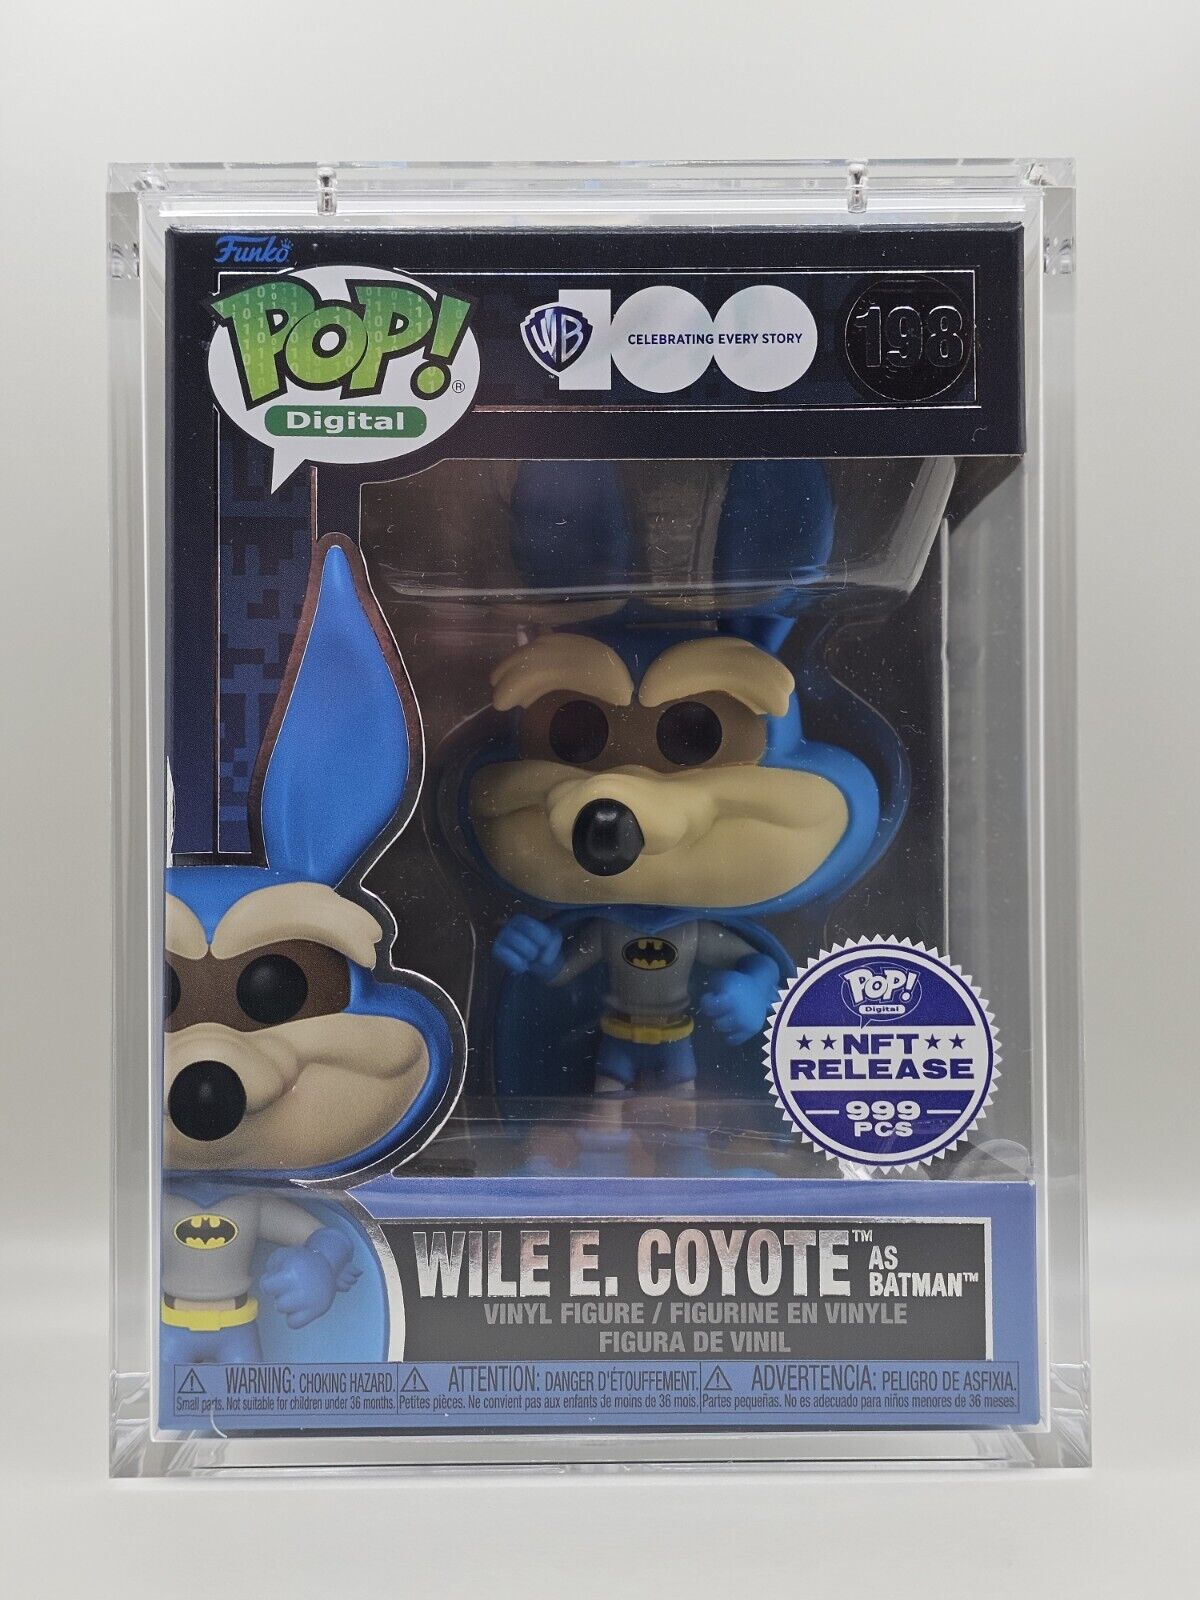 Funko Pop Digital #198 WB 100 Wile E. Coyote As Batman Grail LE 999 BOX SLICE 